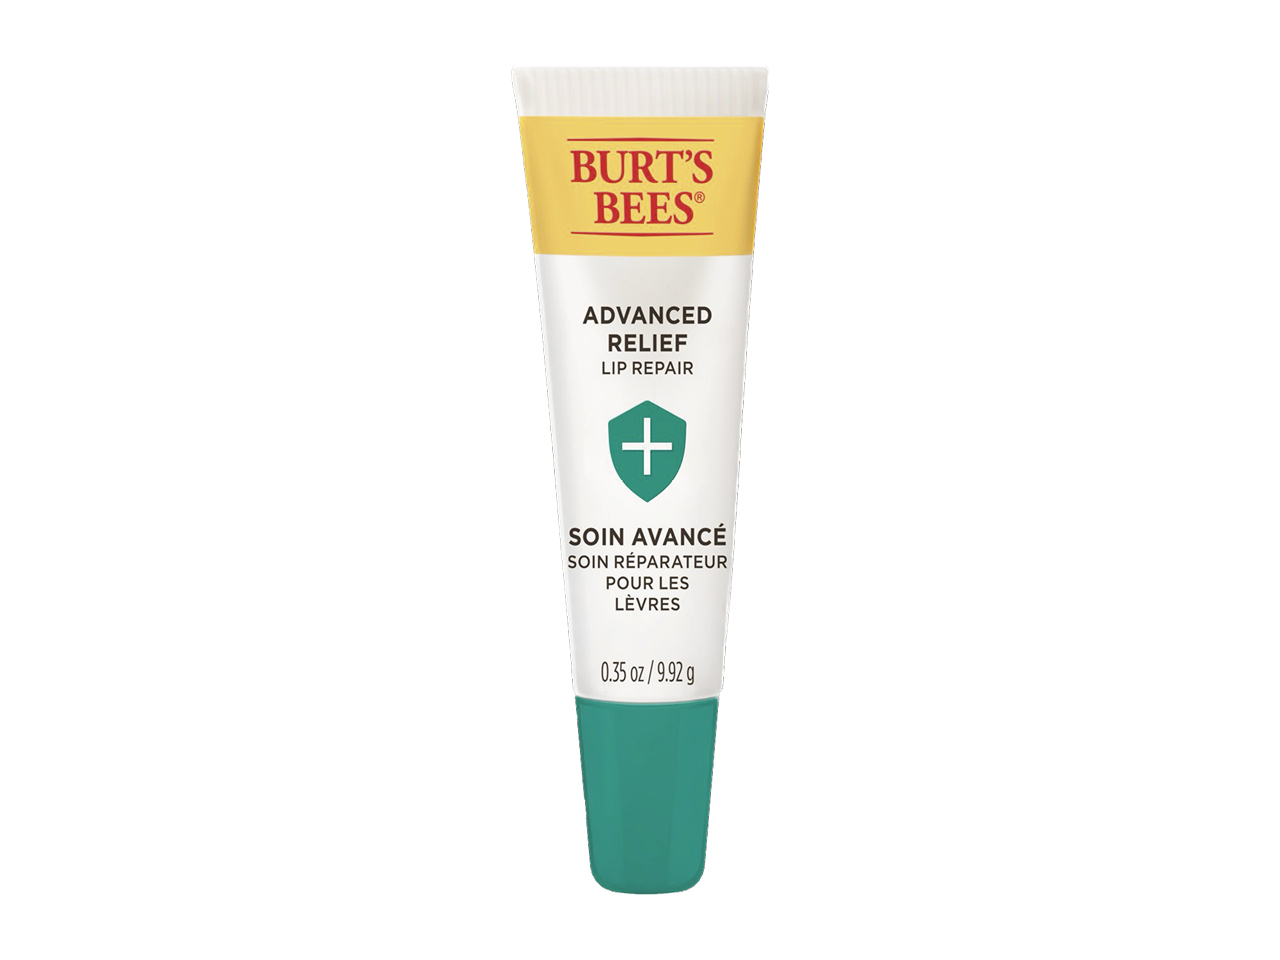 A tube of Burt’s Bees Advanced Relief Lip Repair lip balm with a green cap.